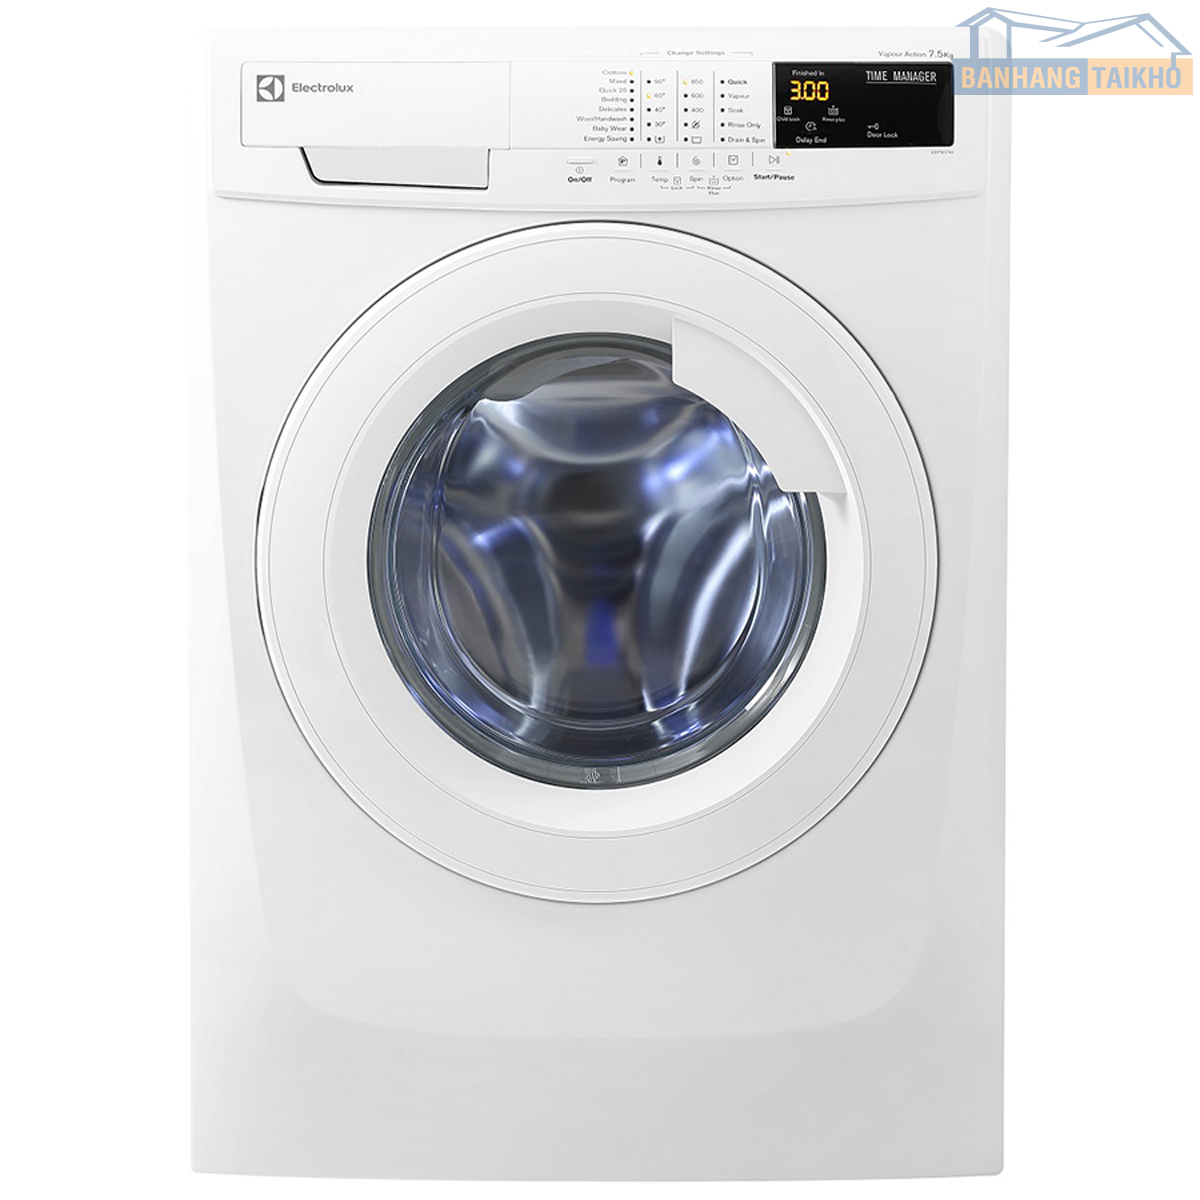 Khắc phục lỗi máy giặt Elextrolux nháy đèn Start nhanh nhất - Điện Máy Akira